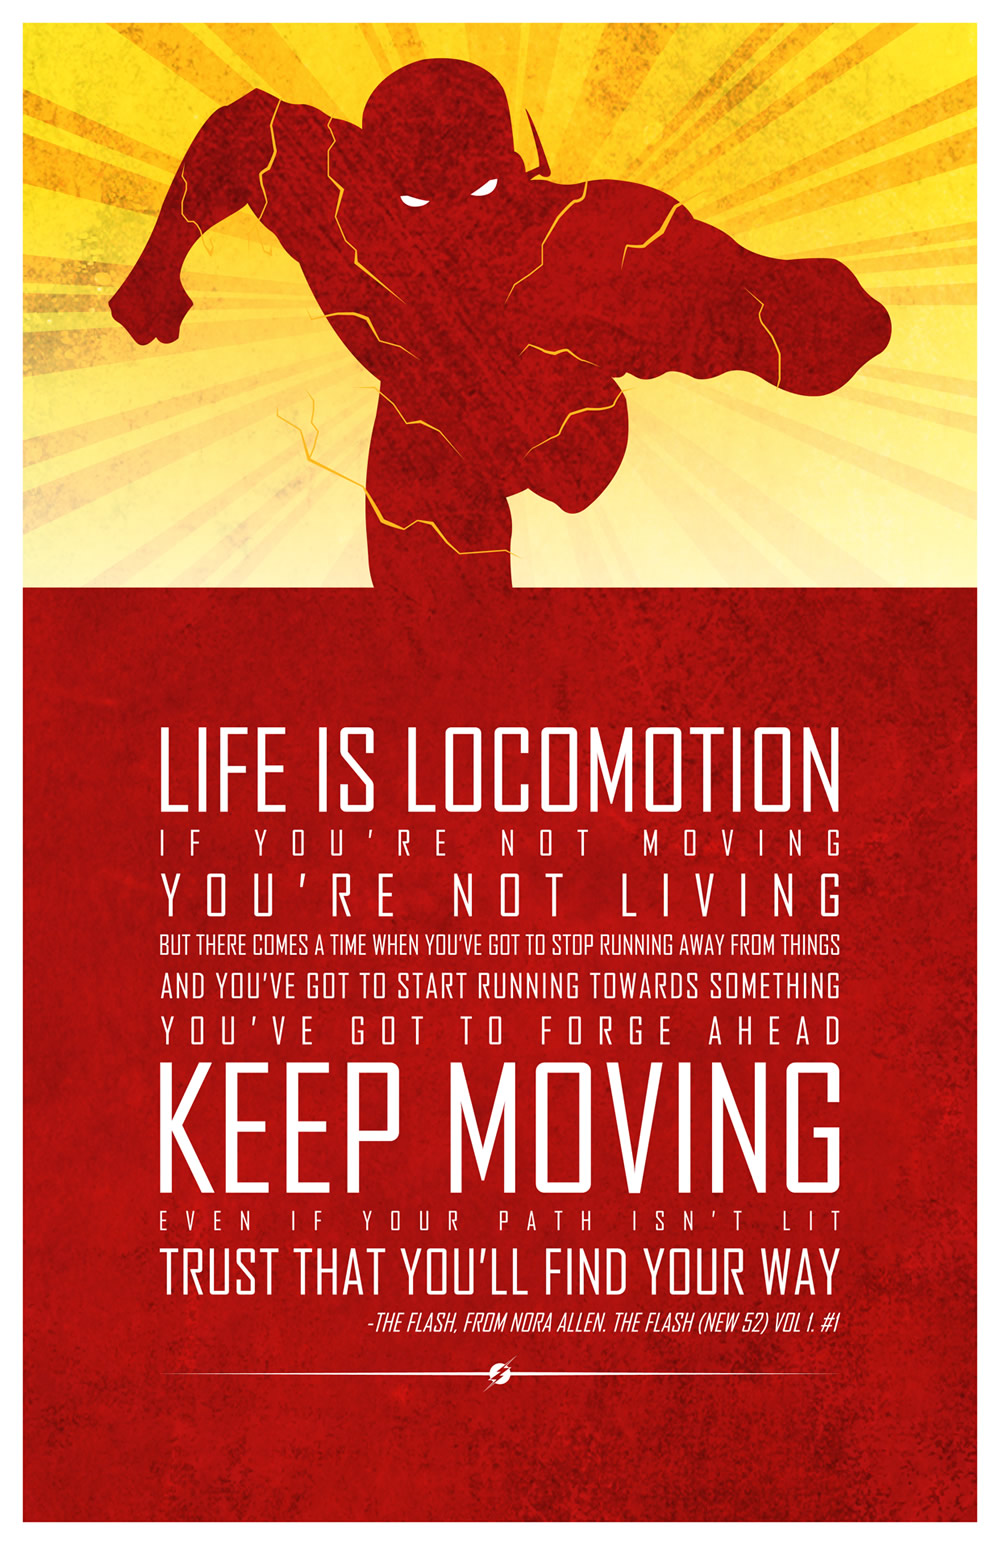  Flash  Gordon  Movie Quotes  QuotesGram